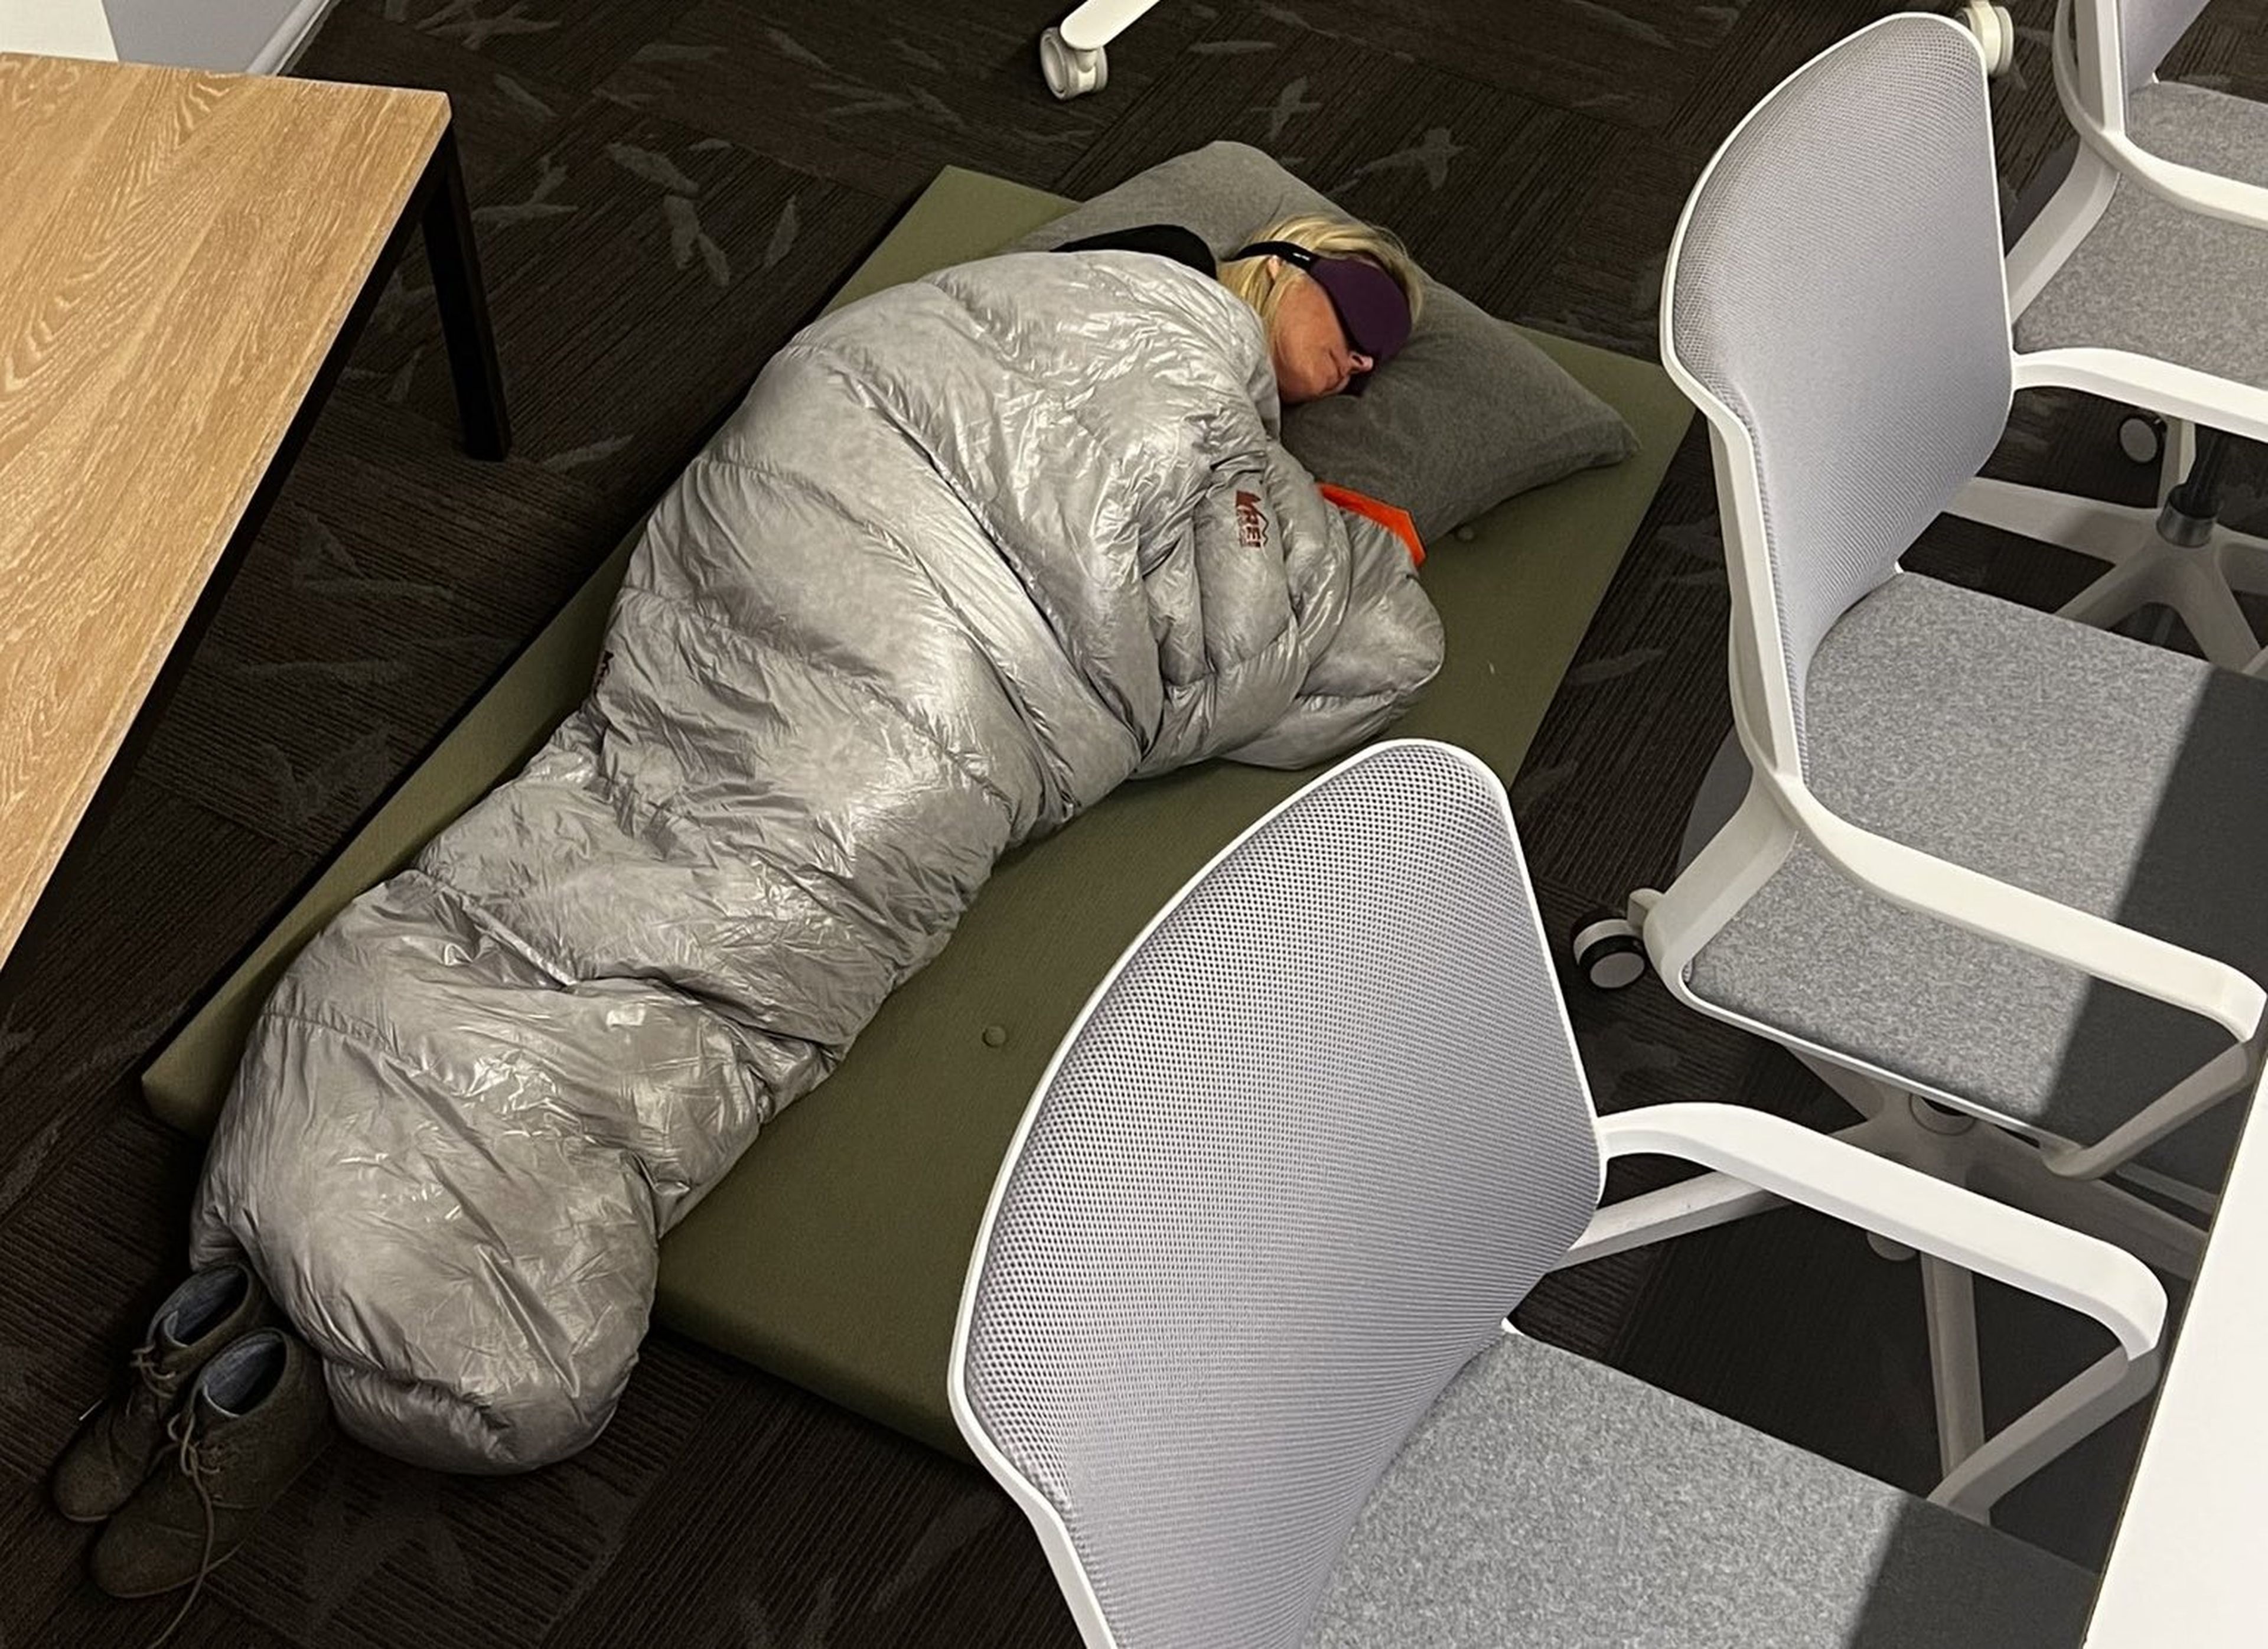 Una foto de Esther Crawford, exdirectora de gestión de productos en Twitter, publicada en la red social para dejar constancia de cómo la empleada dormía en el suelo de la oficina.